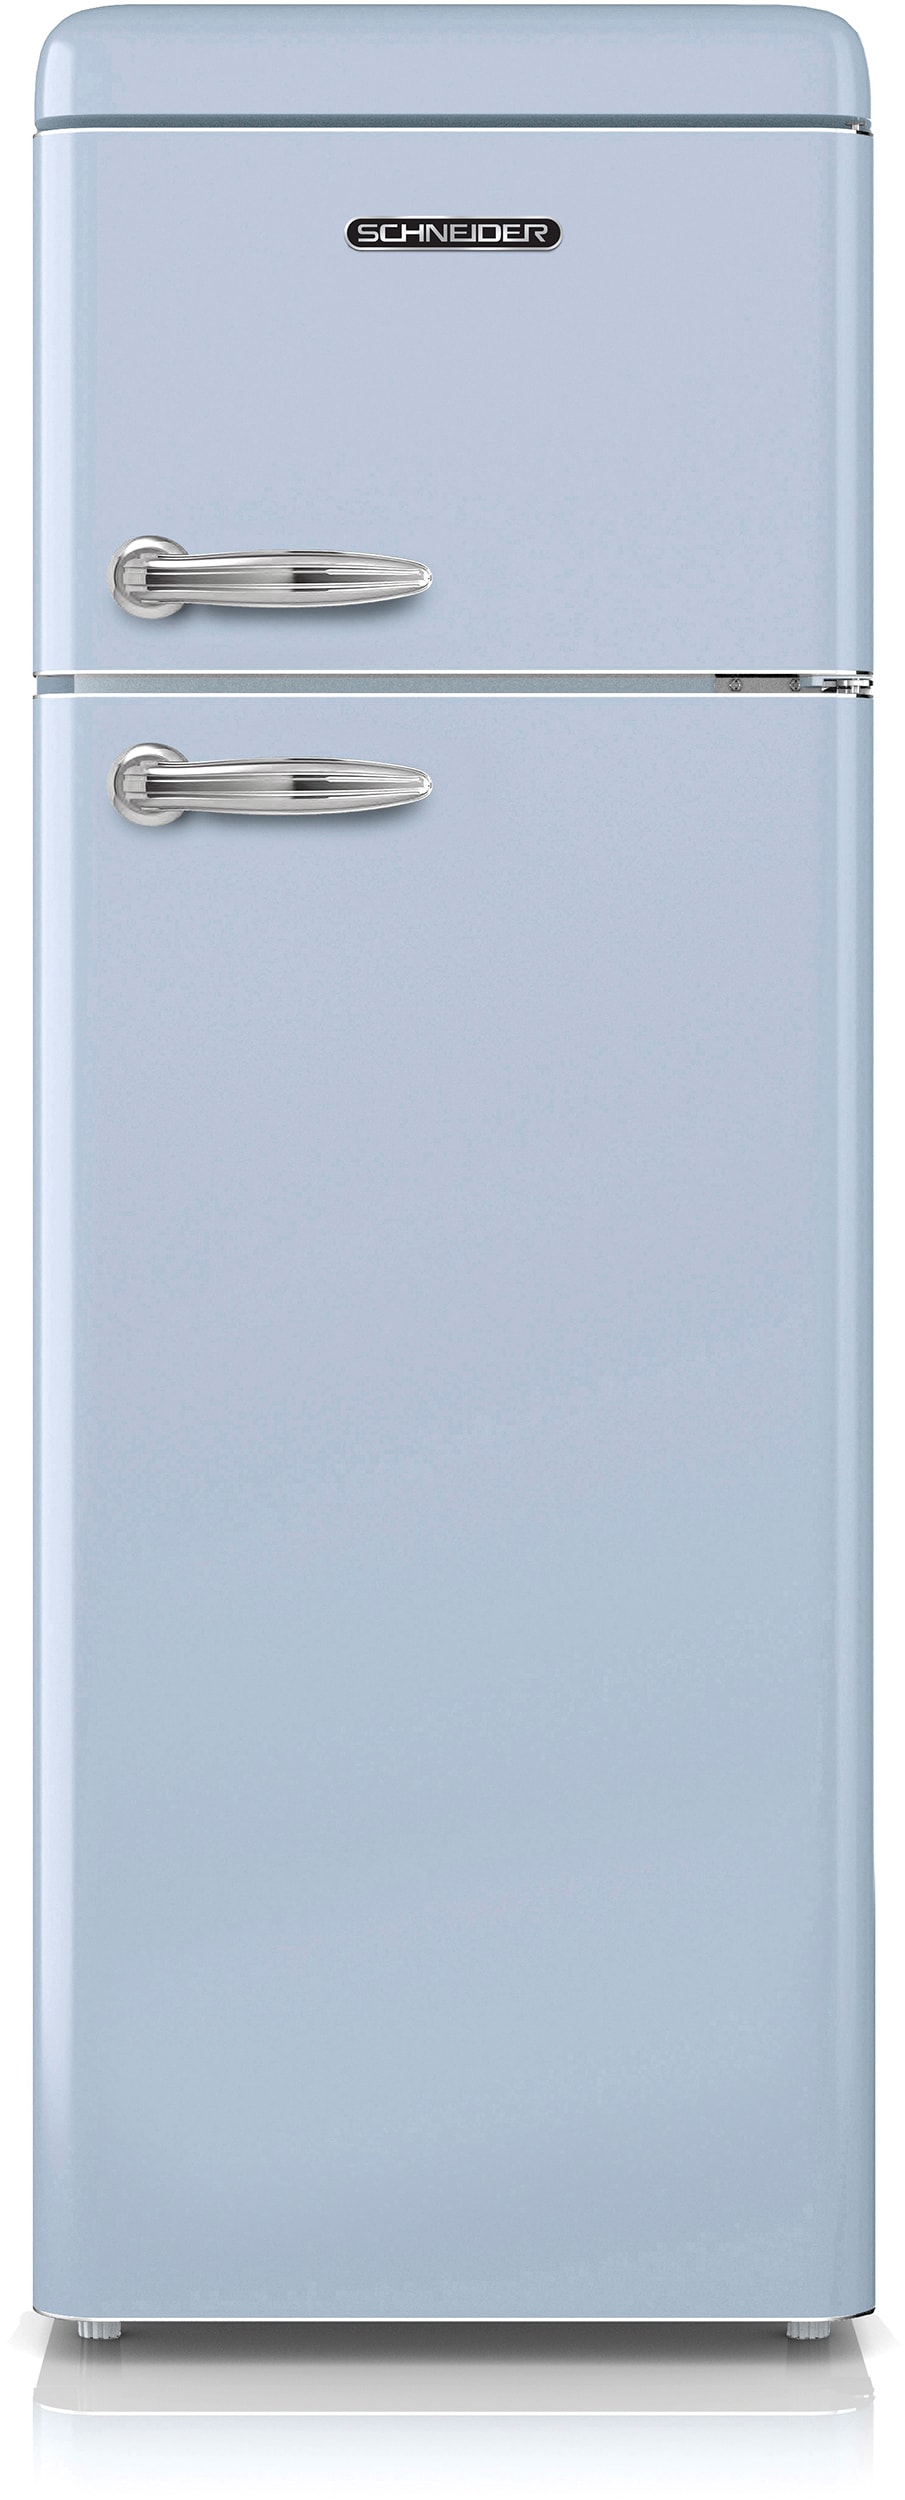 Réfrigérateur congélateur haut SCHNEIDER SDD208VBL Pas Cher 